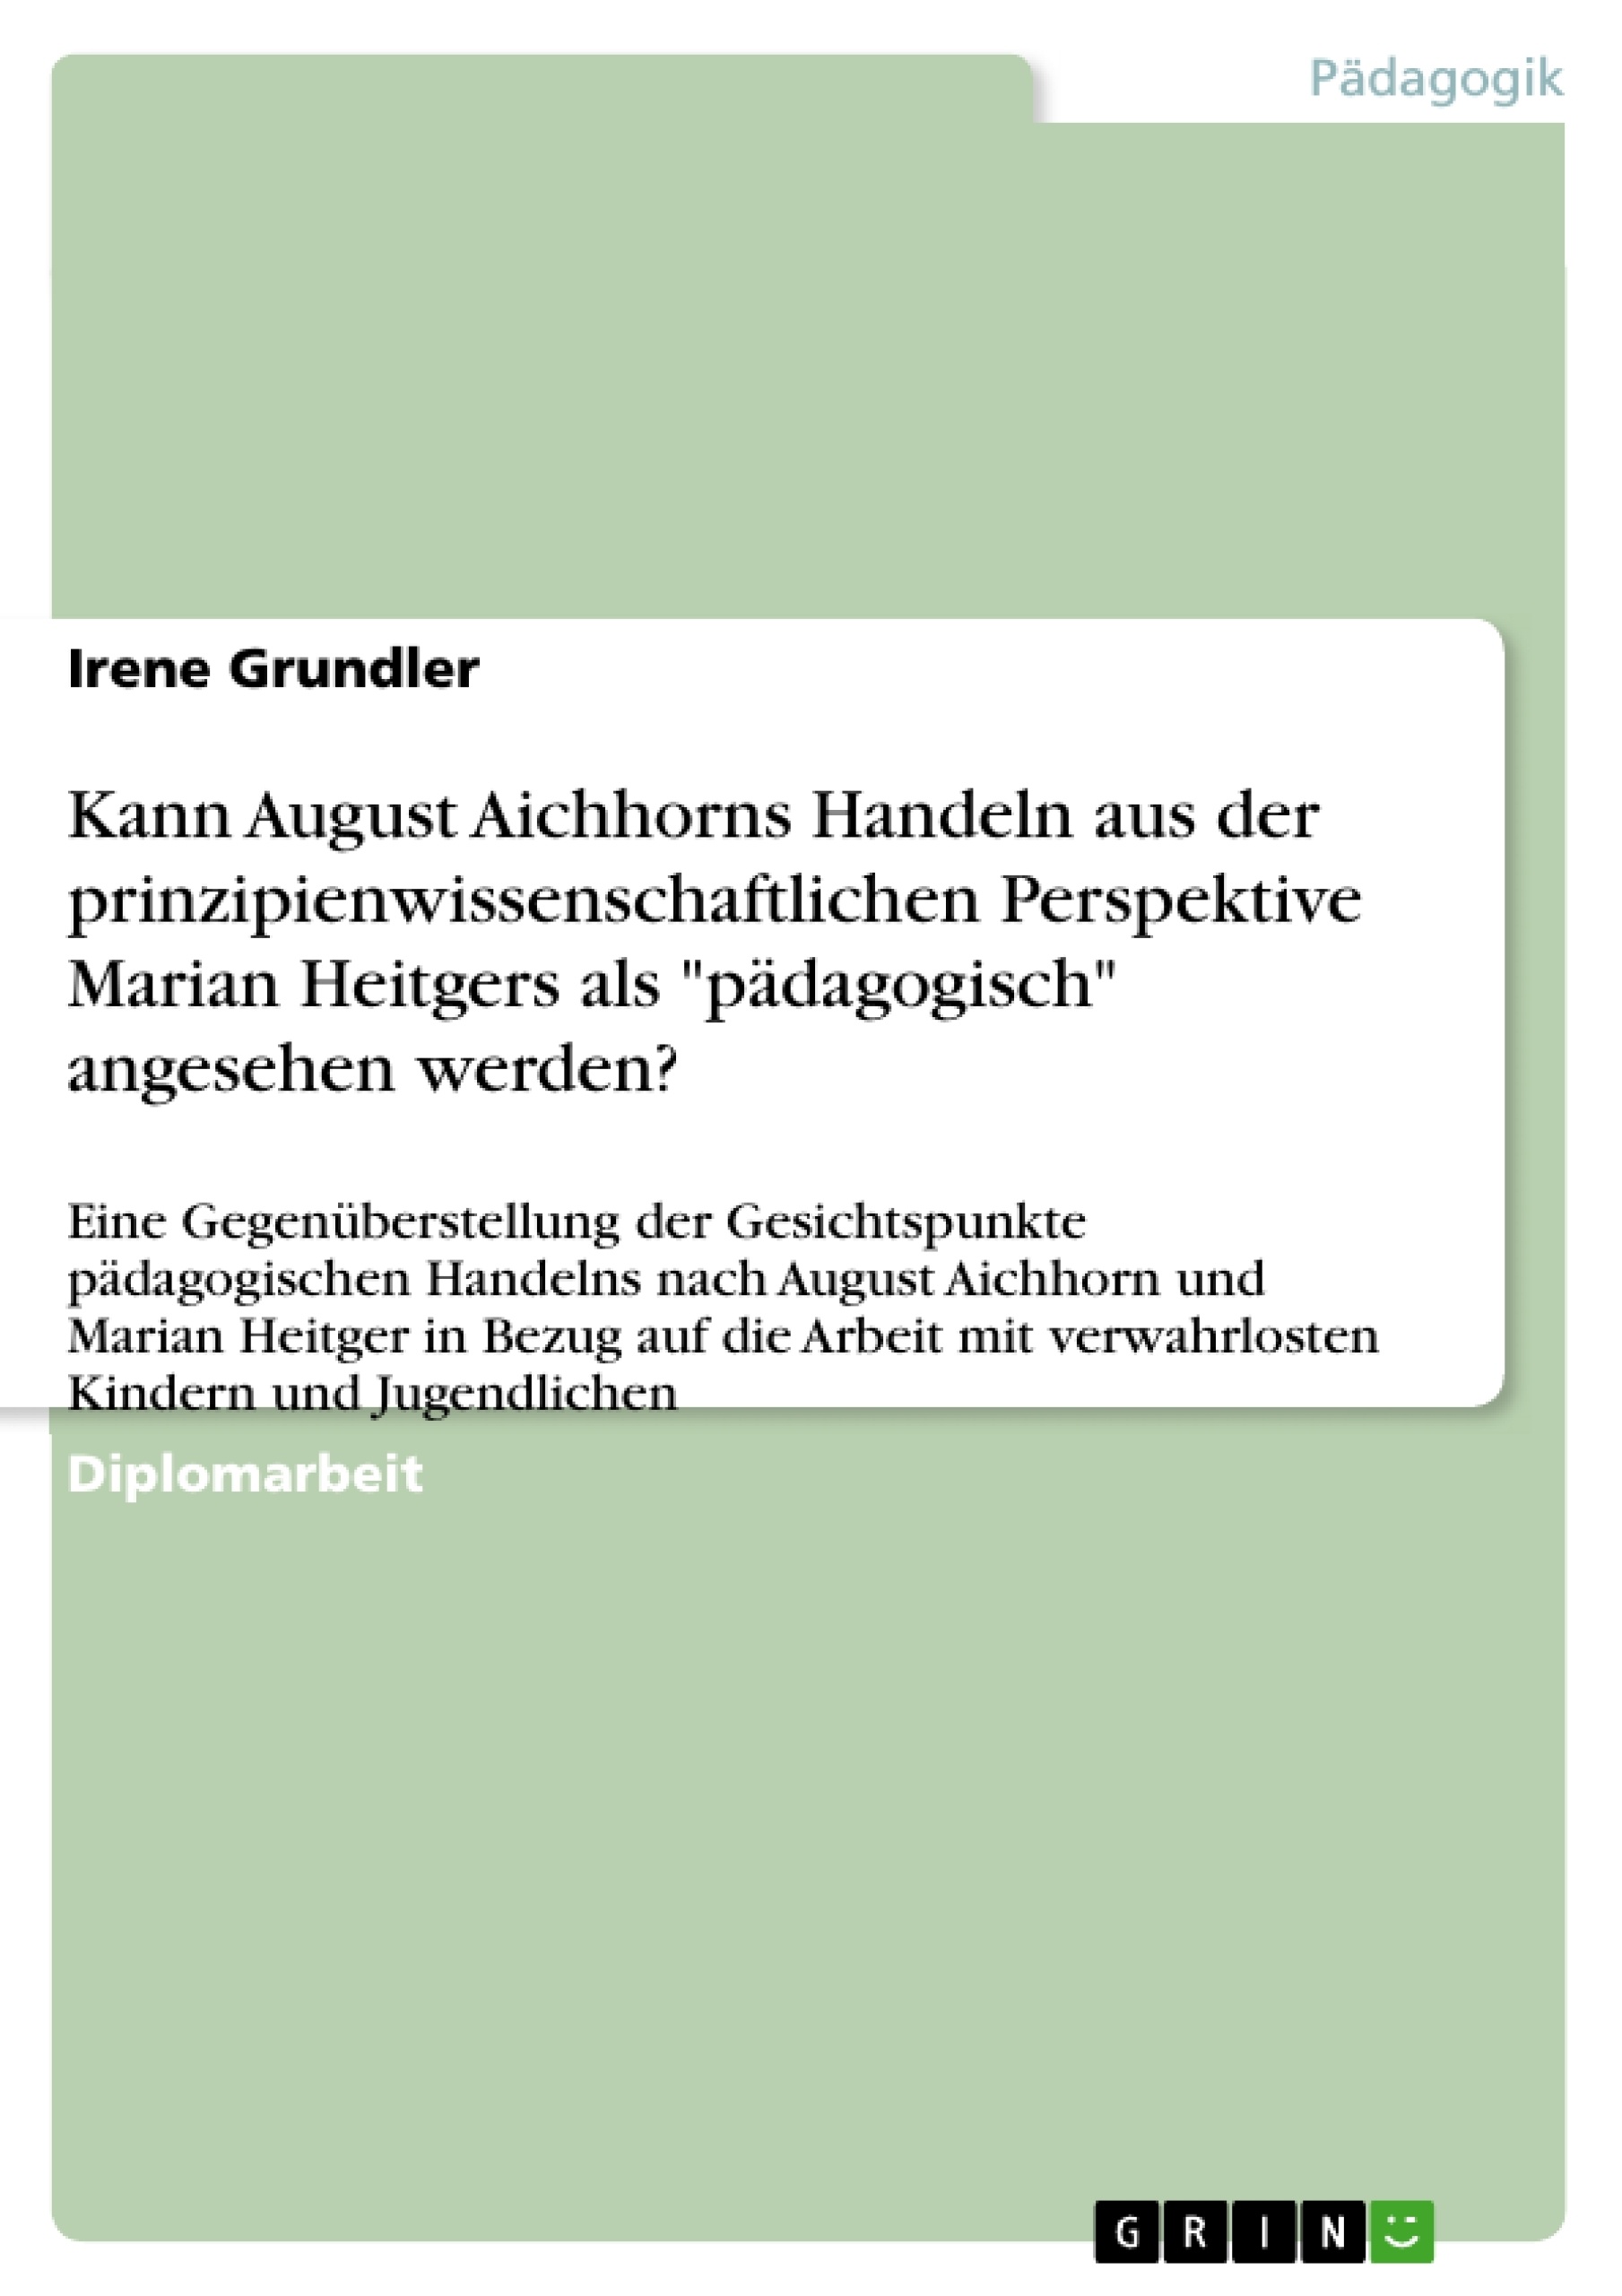 Titre: Kann August Aichhorns Handeln aus der prinzipienwissenschaftlichen Perspektive Marian Heitgers als "pädagogisch" angesehen werden?